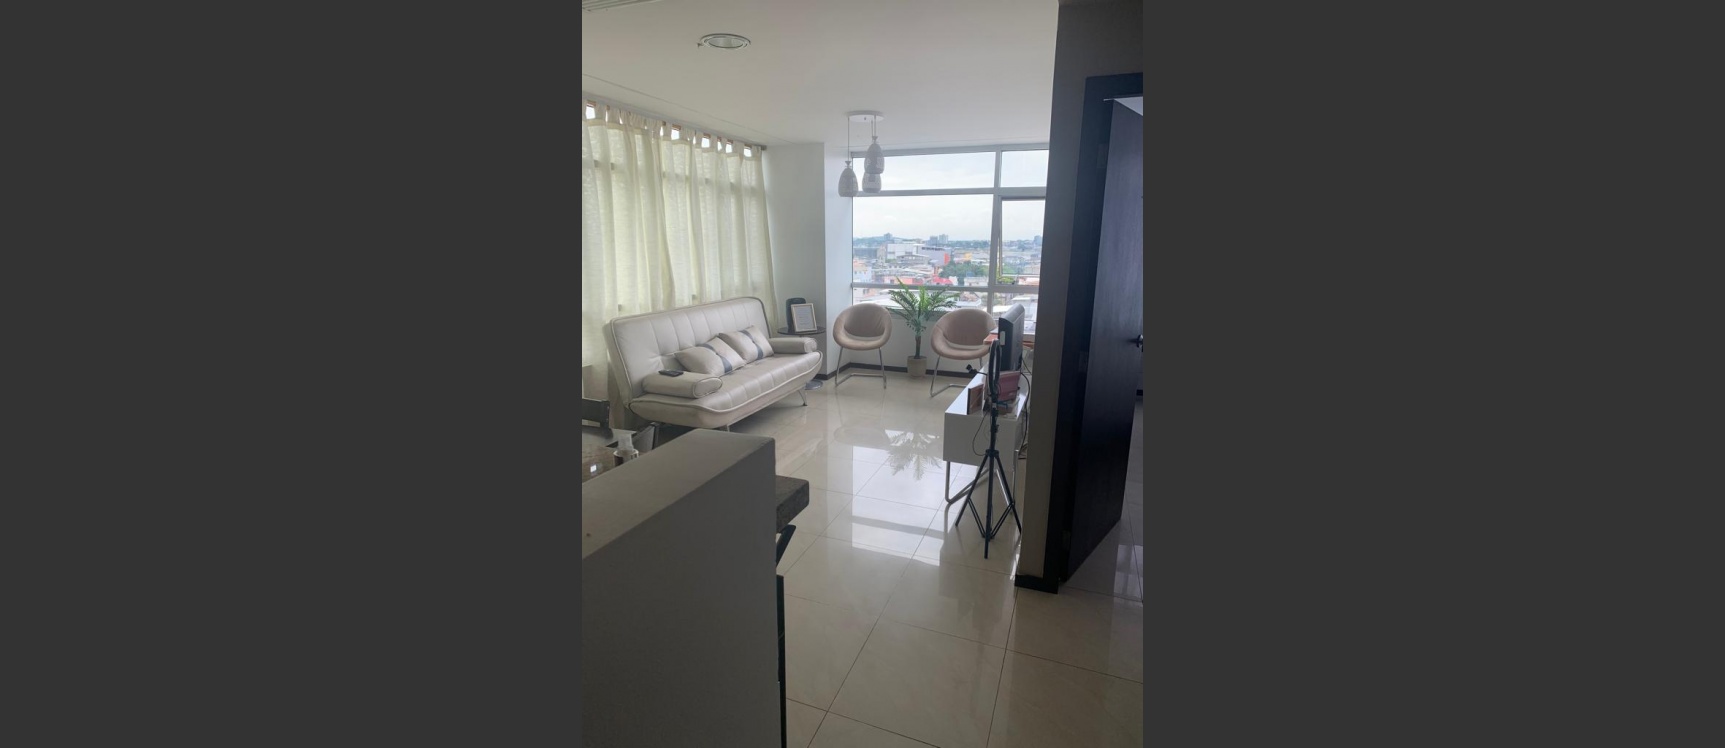 GeoBienes - Suite amoblada en alquiler ubicada en el Edificio Elite Building - Plusvalia Guayaquil Casas de venta y alquiler Inmobiliaria Ecuador